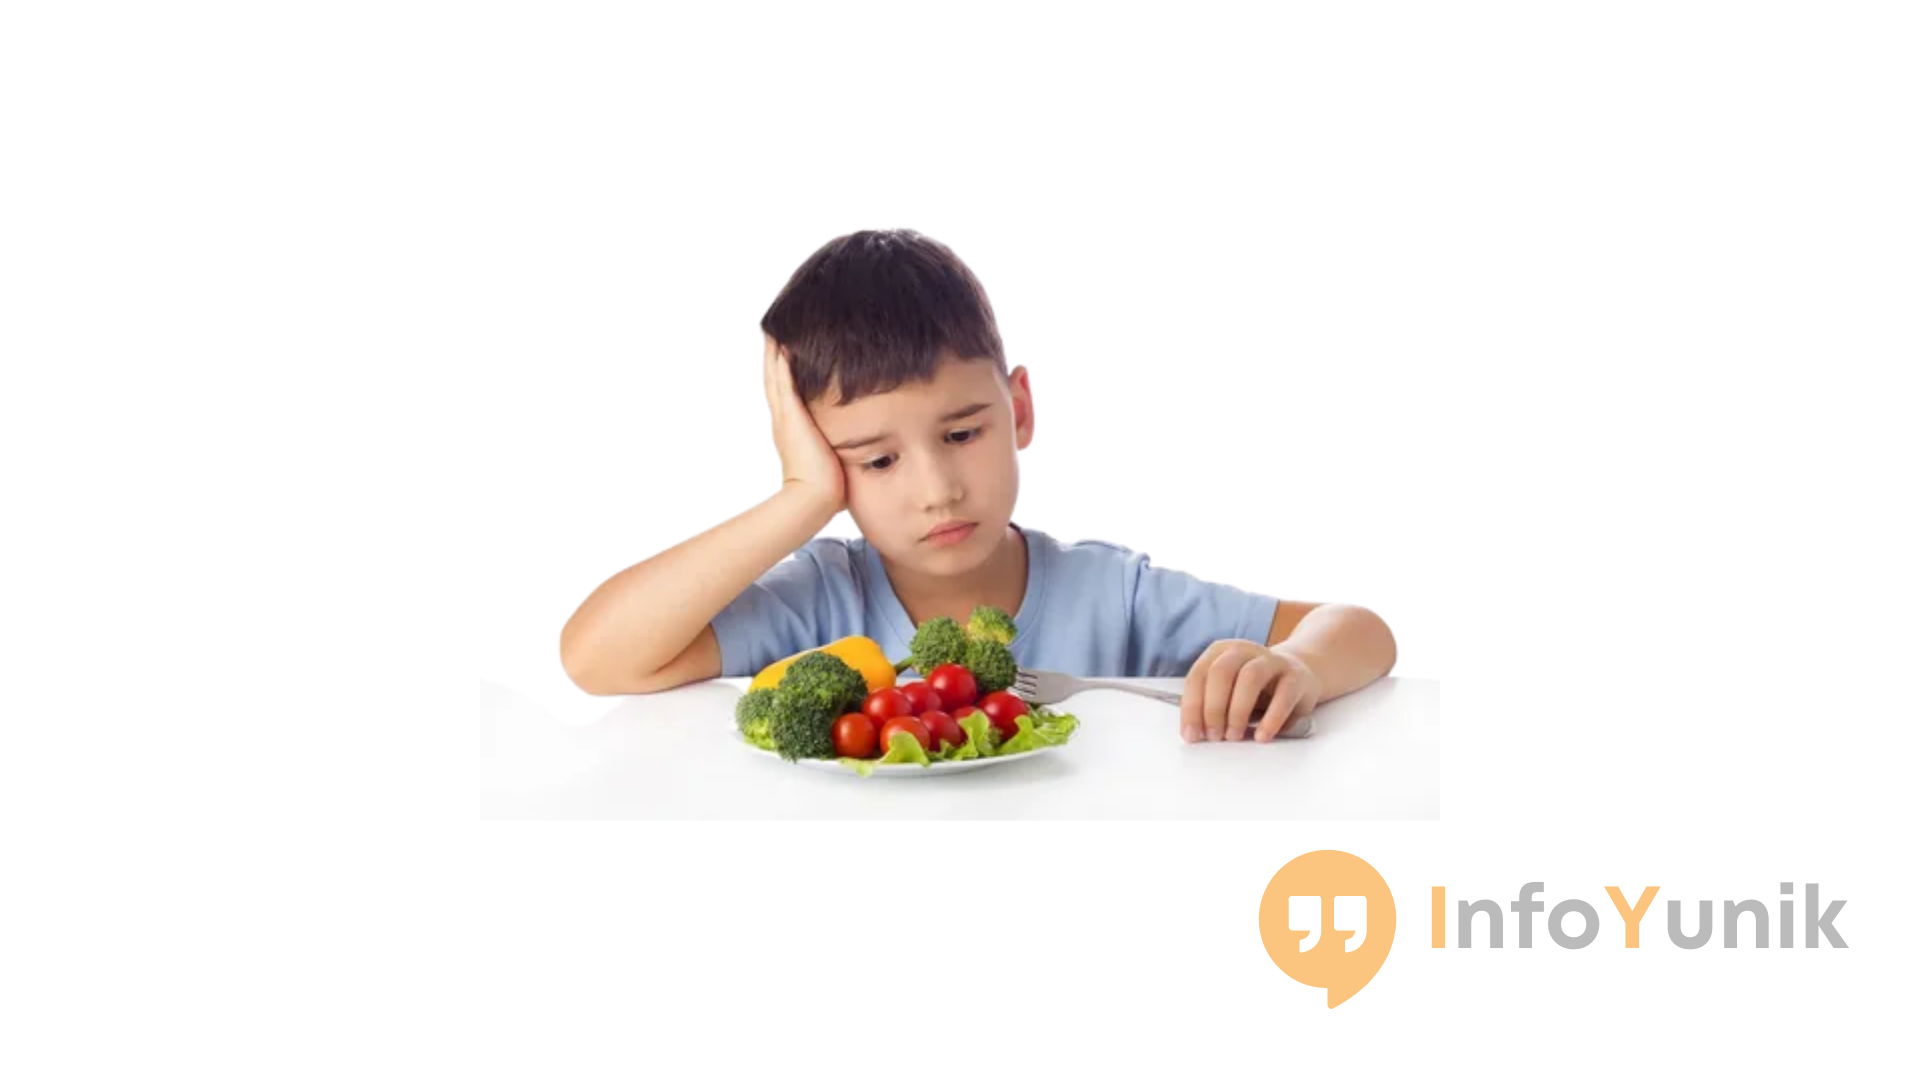 Cara dan Tips Mengatasi Anak Susah Makan